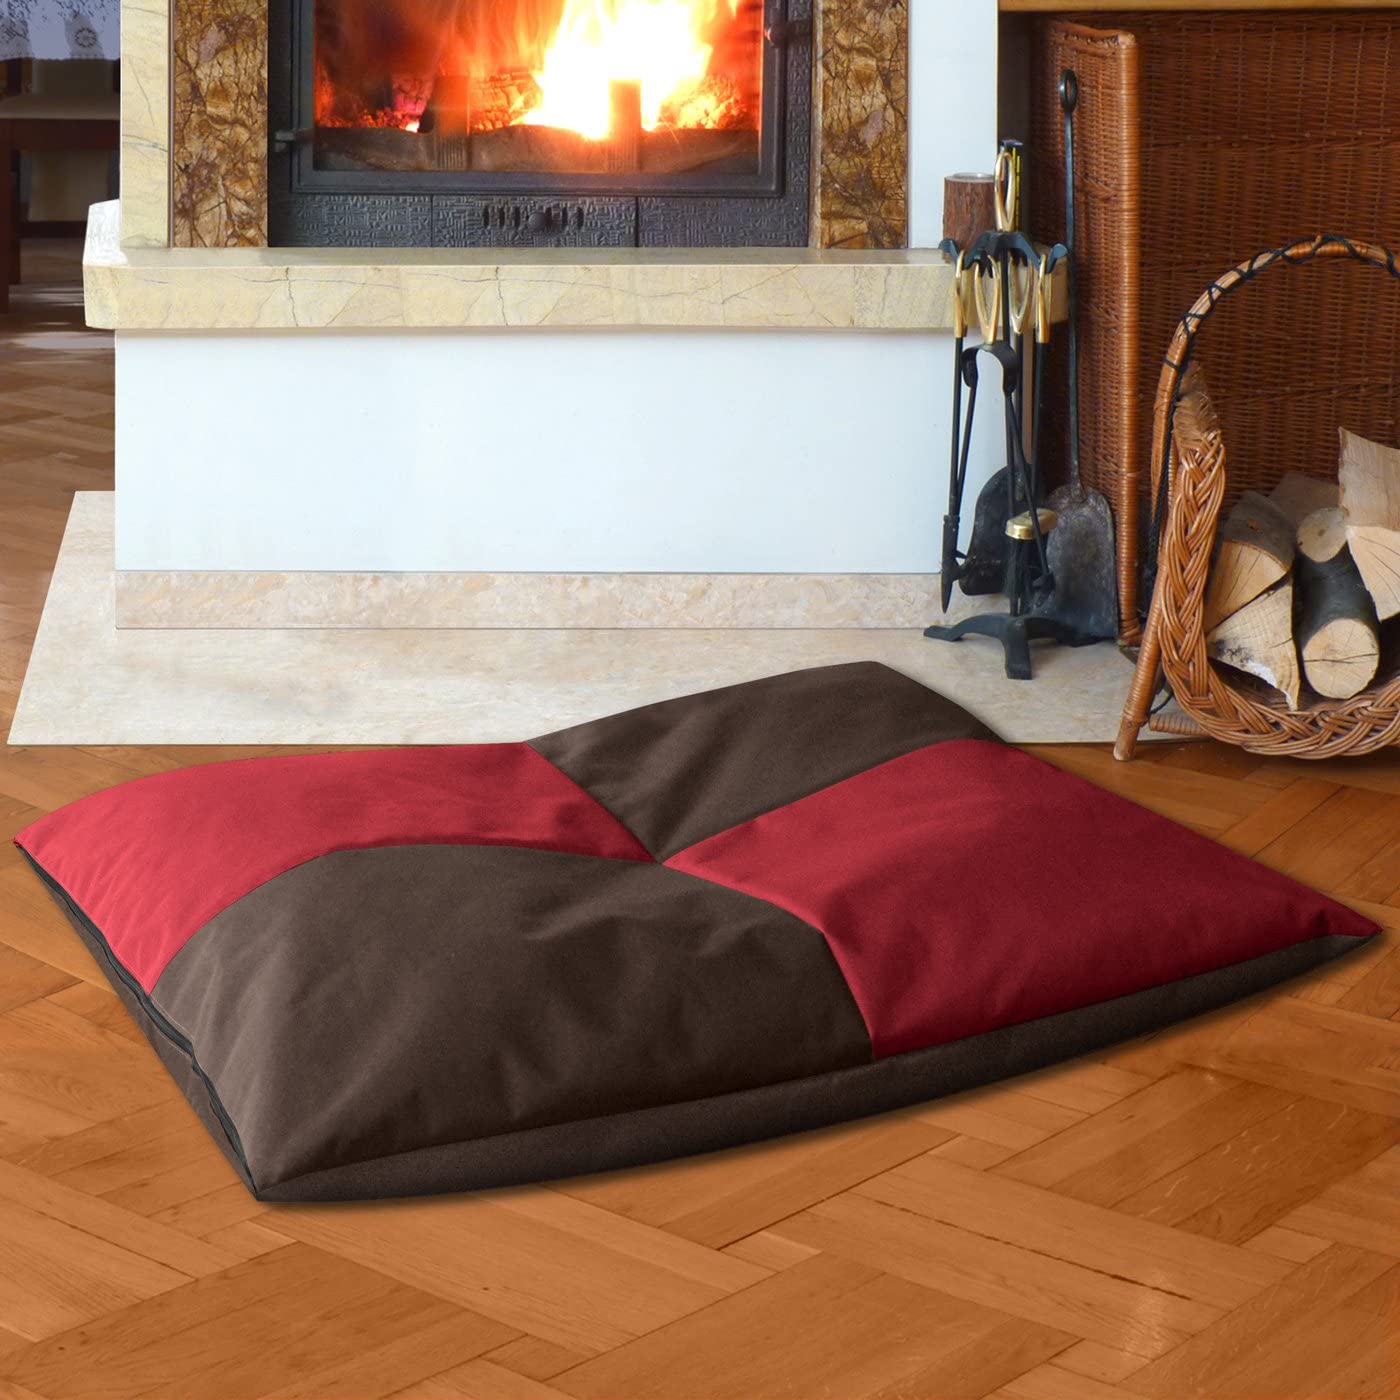  BedDog® Bona 2en1 Rojo/Negro XXL Aprox. 110x90cm colchón para Perro, 6 Colores, Cama para Perro, sofá para Perro, Cesta para Perro 